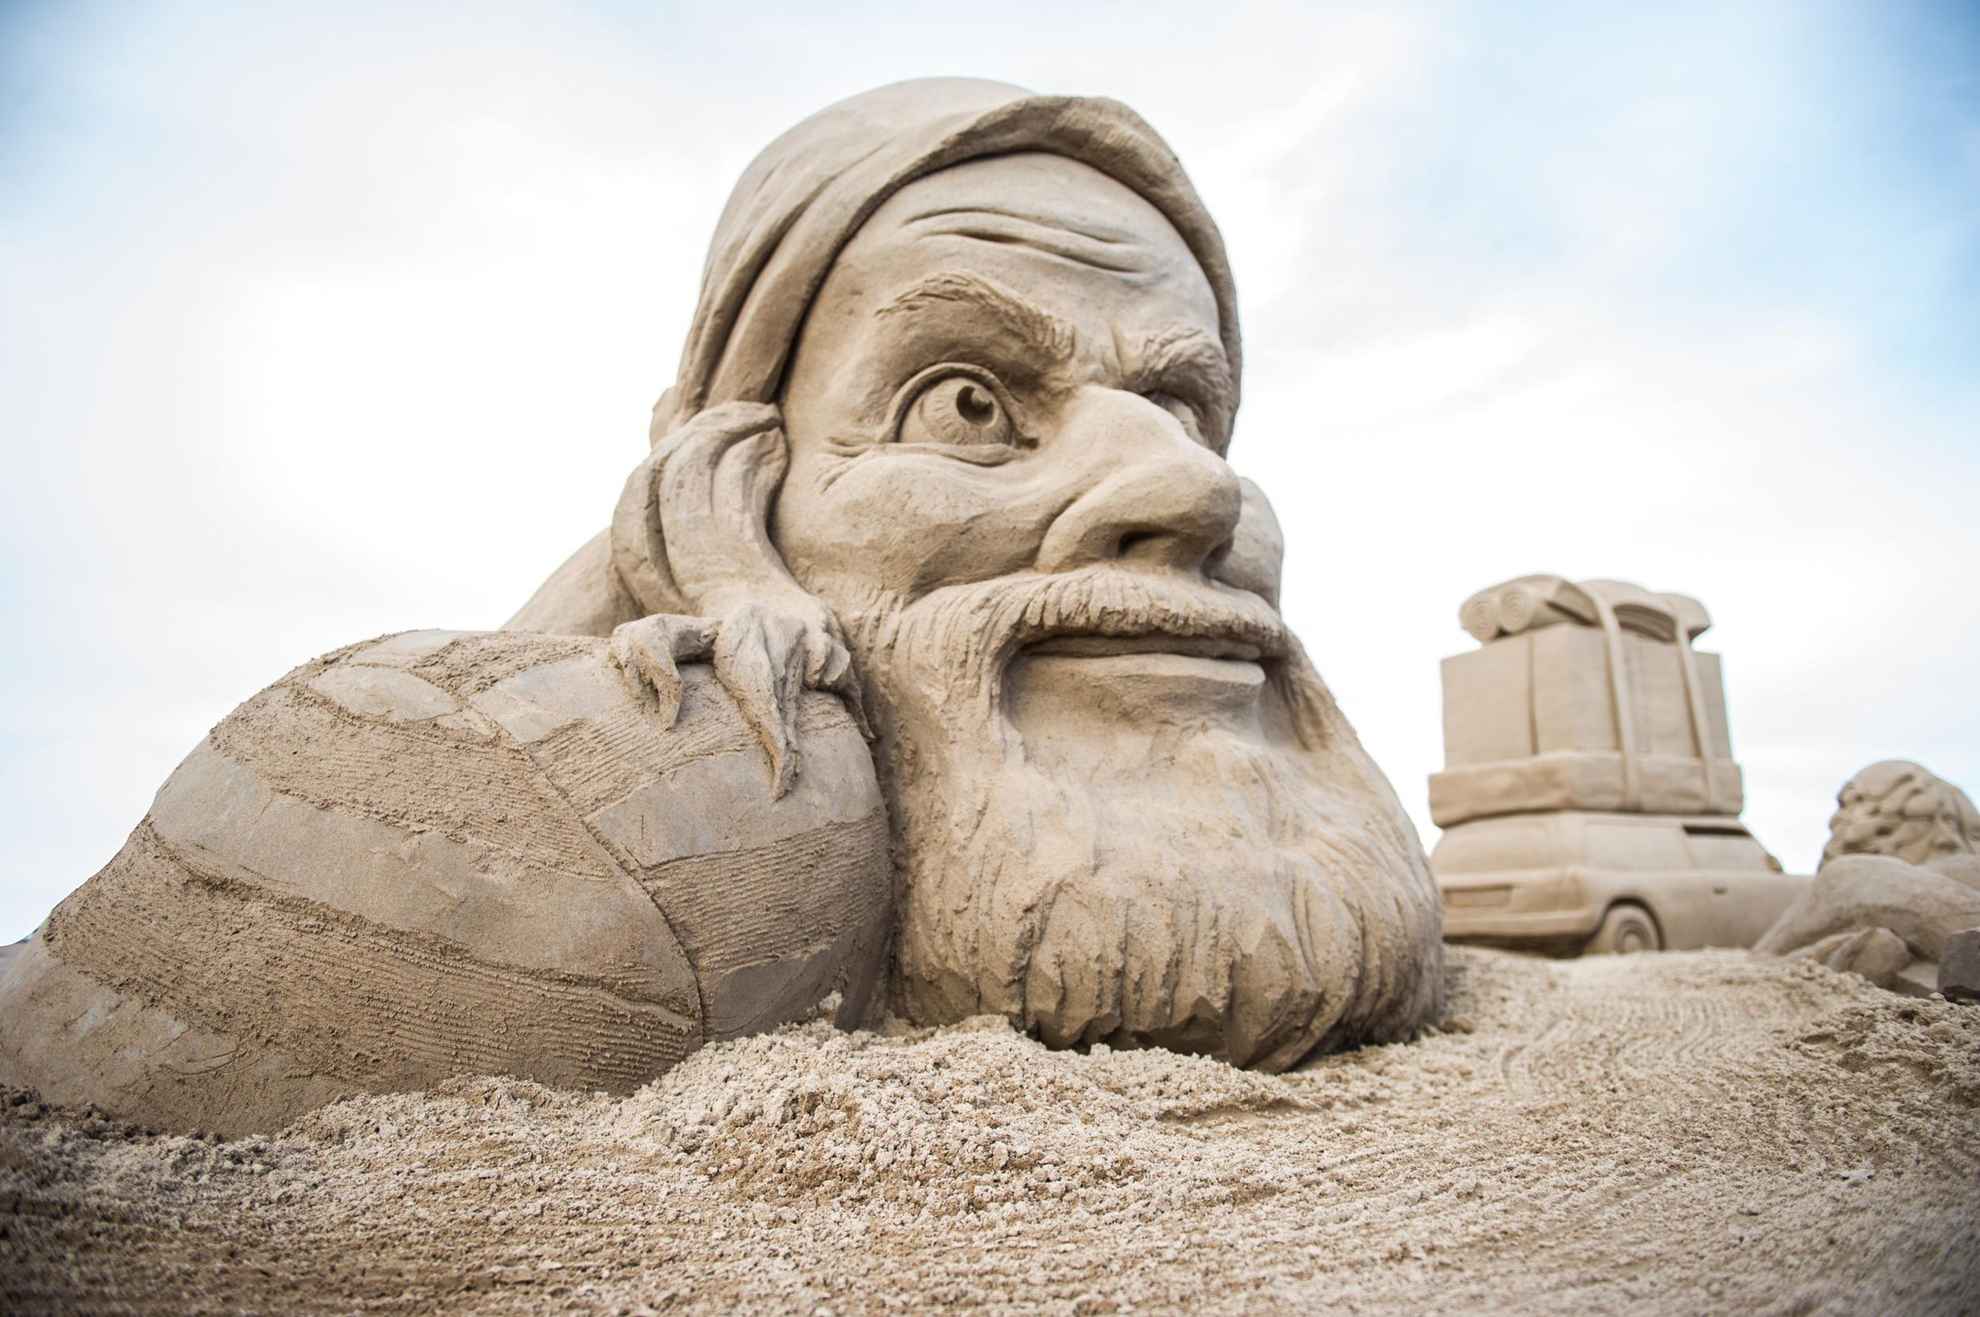 Eine Sandskulptur, die den Kopf eines alten Mannes mit Bart darstellt.